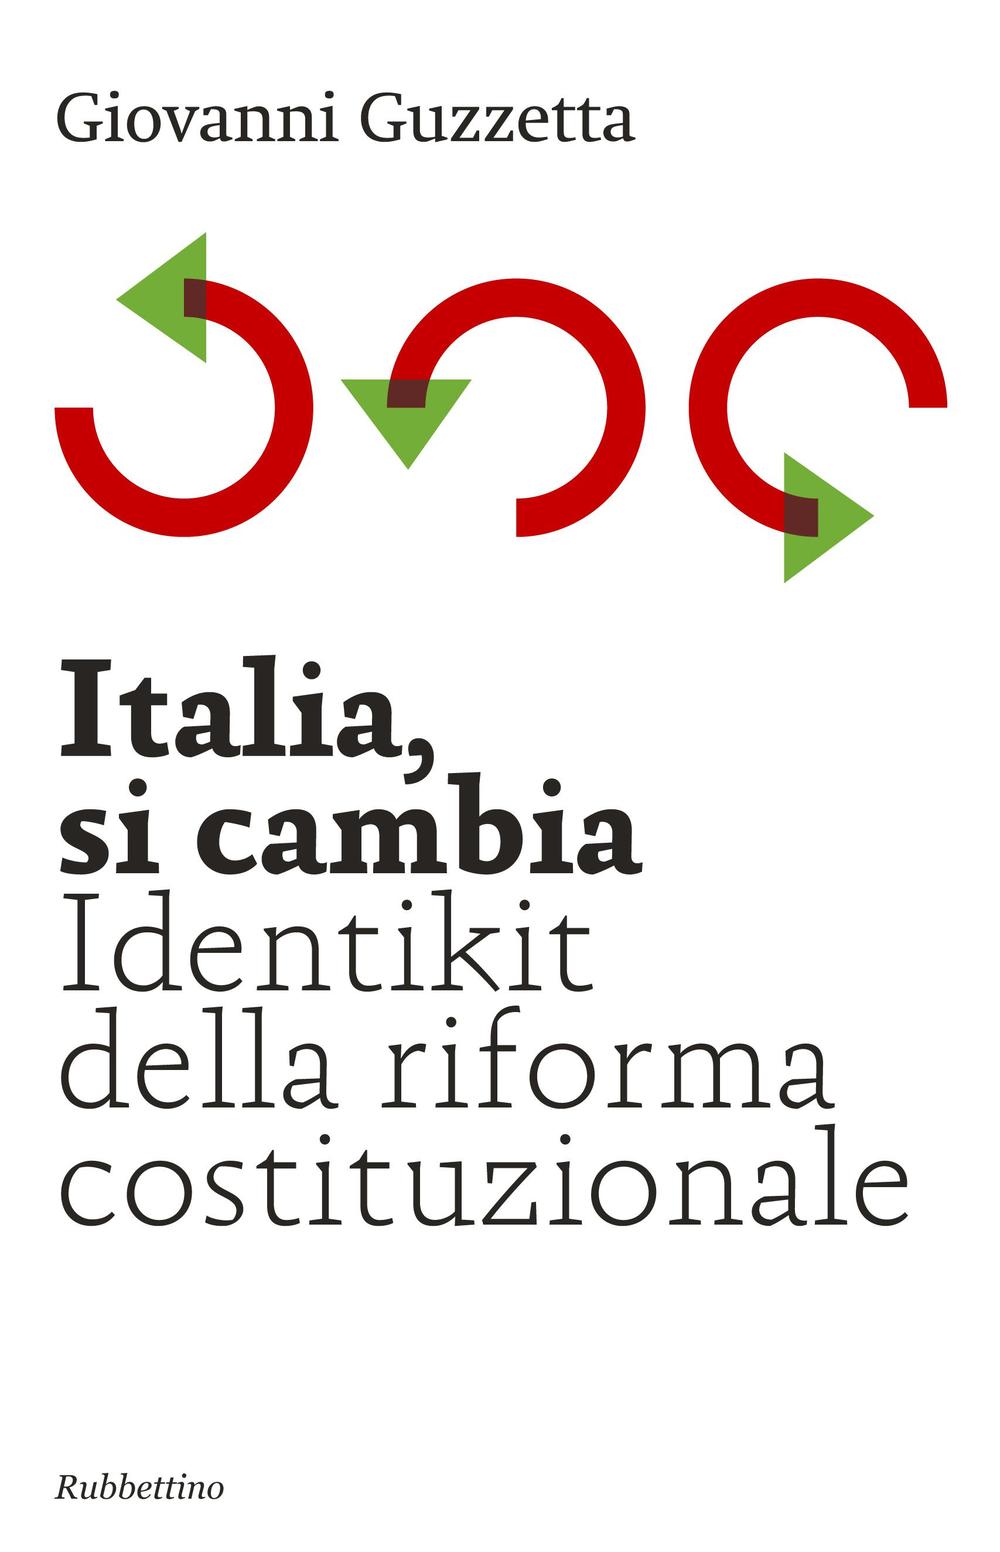 Italia, si cambia. Identikit della riforma costituzionale